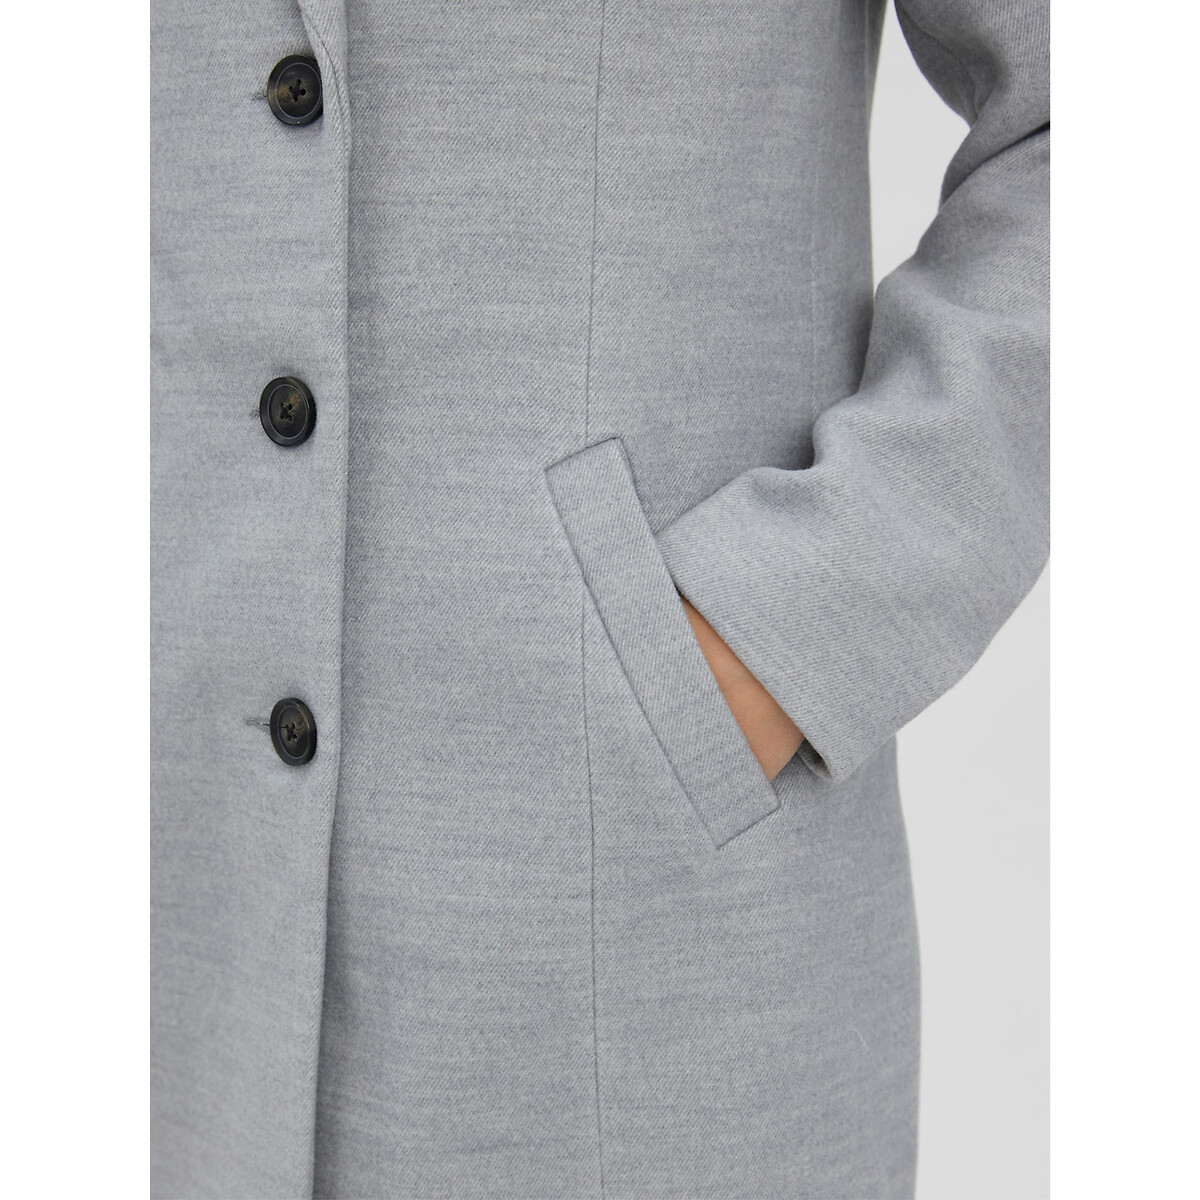 Пальто VERO MODA Прямого покроя костюмный воротник S серый, размер S - фото 4